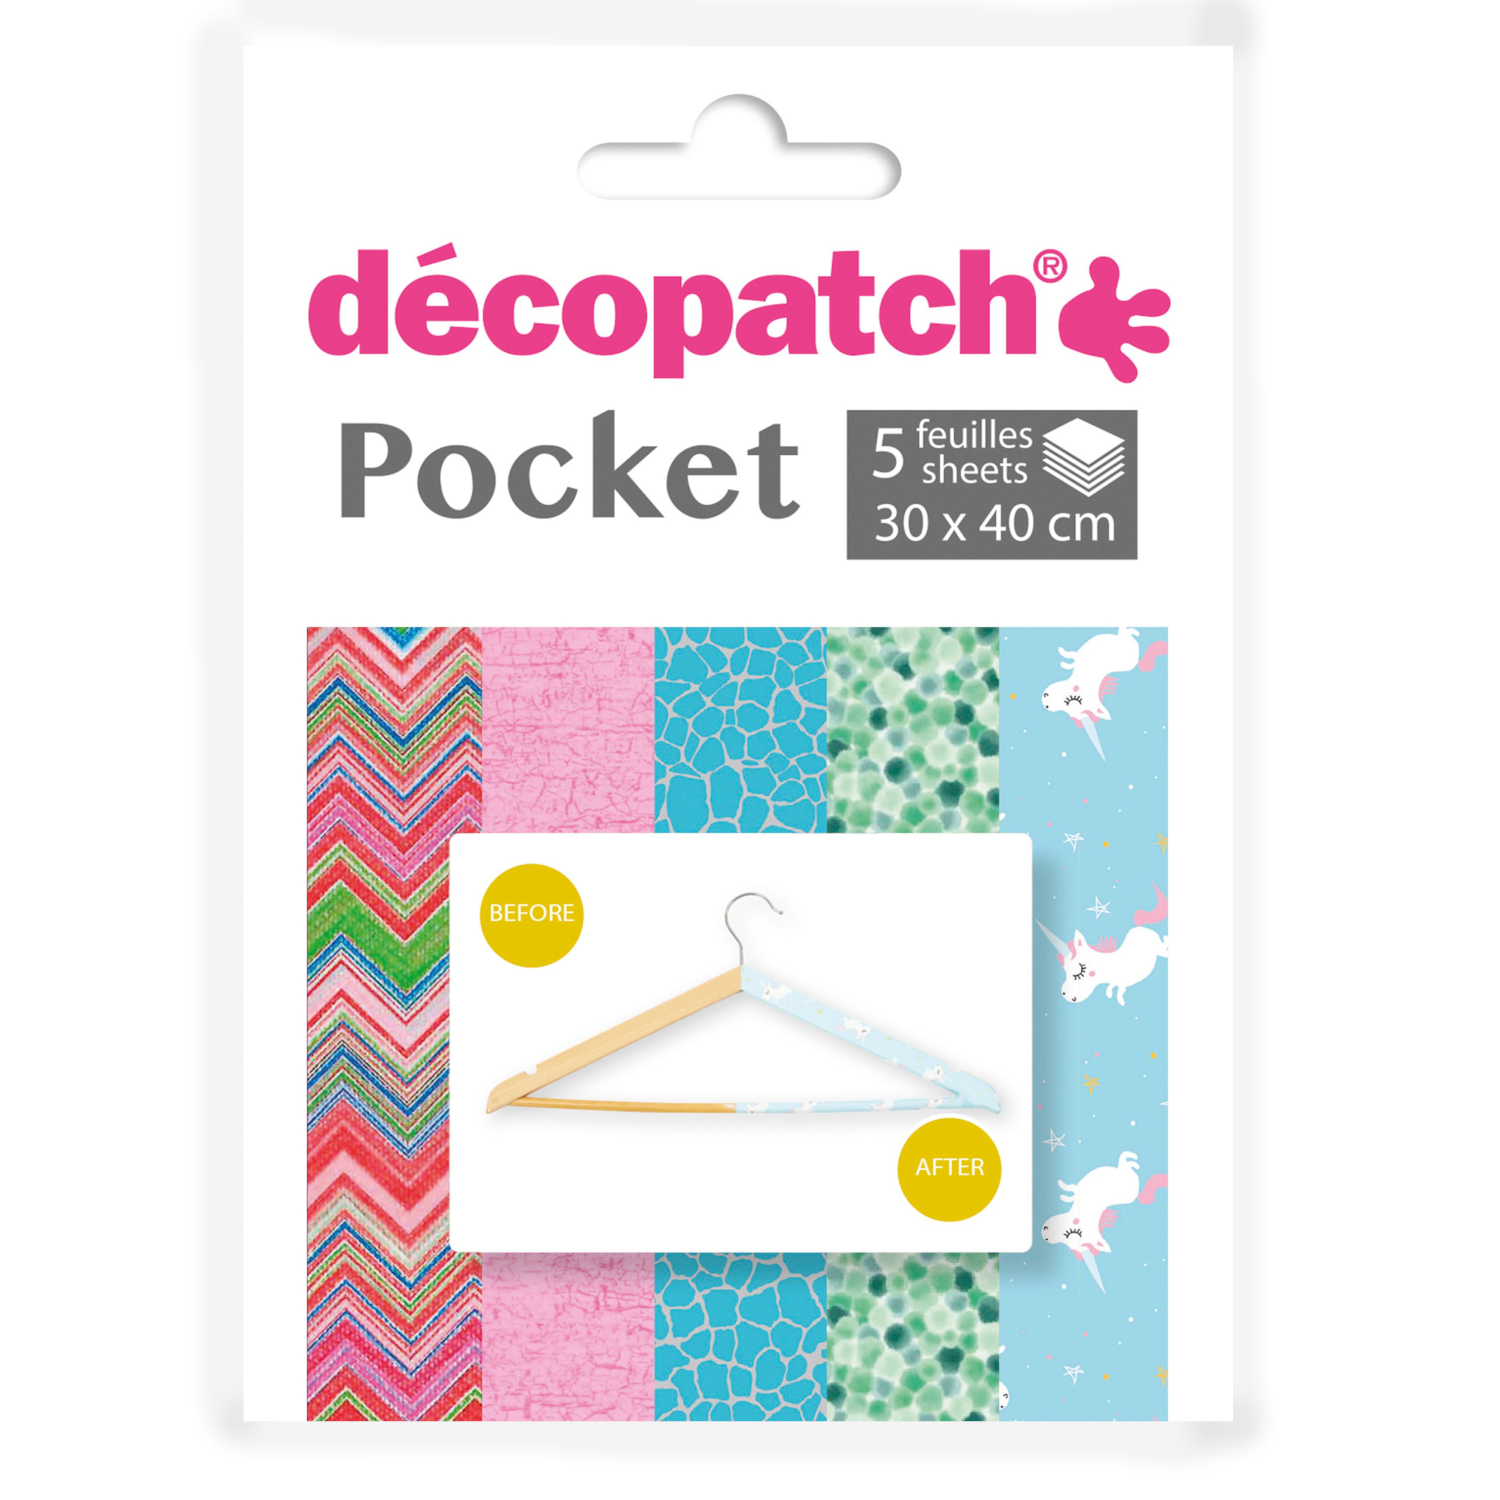 NEU Decoupage- / Decopatch-Papier Pocket-Sortierung, 5 Bogen 30 x 40 cm, Motive: 603, 299, 537, 830, 727